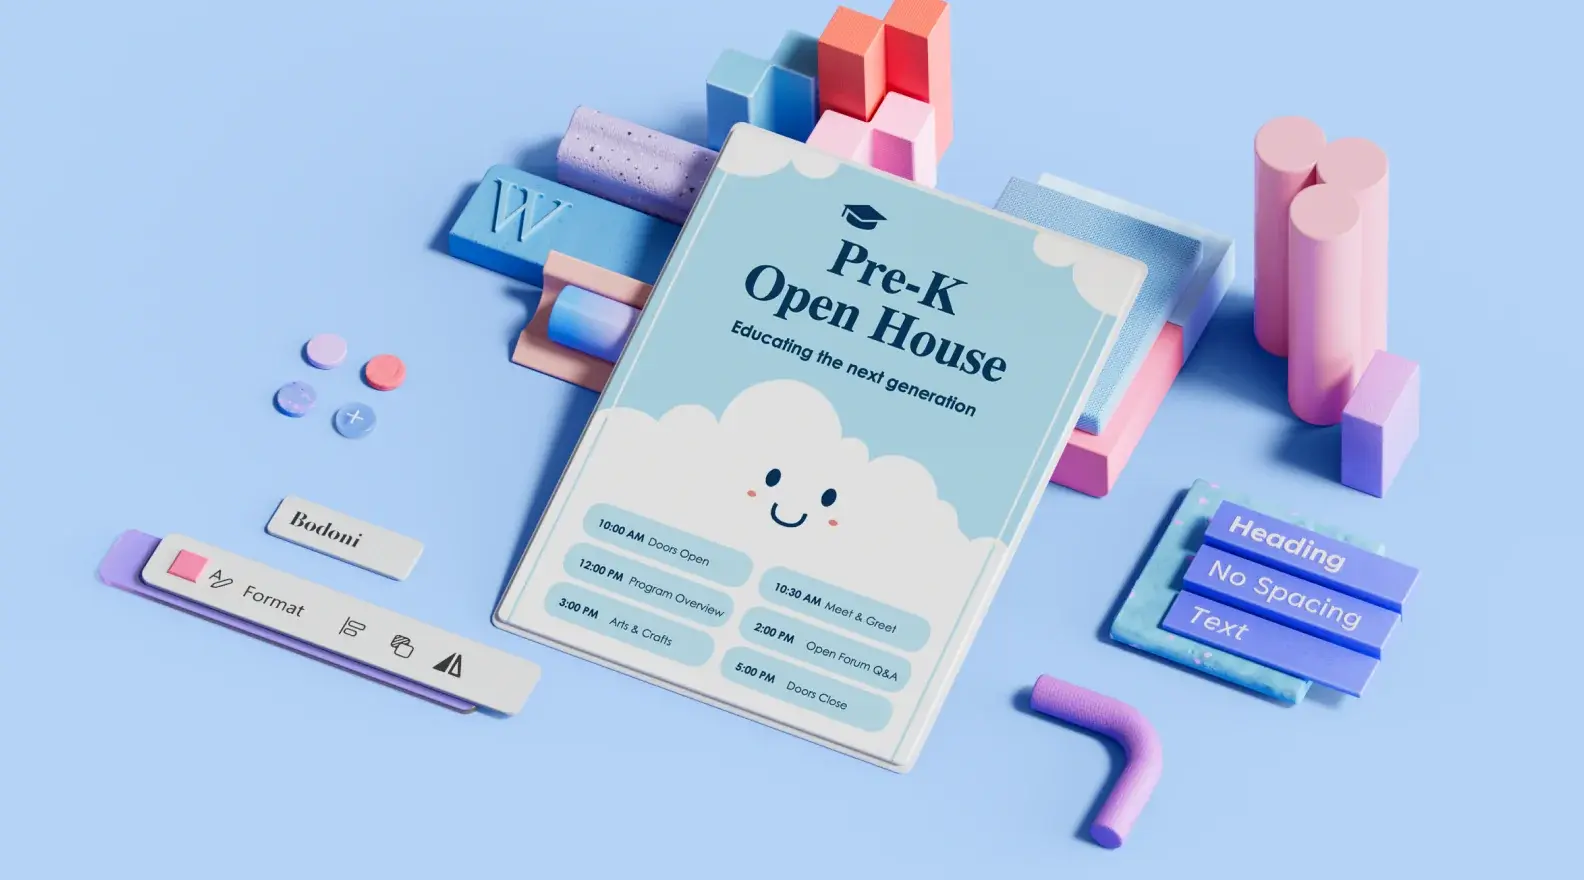 Sjabloon met poster over open huis van basisschool, omgeven door 3D-ontwerpelementen